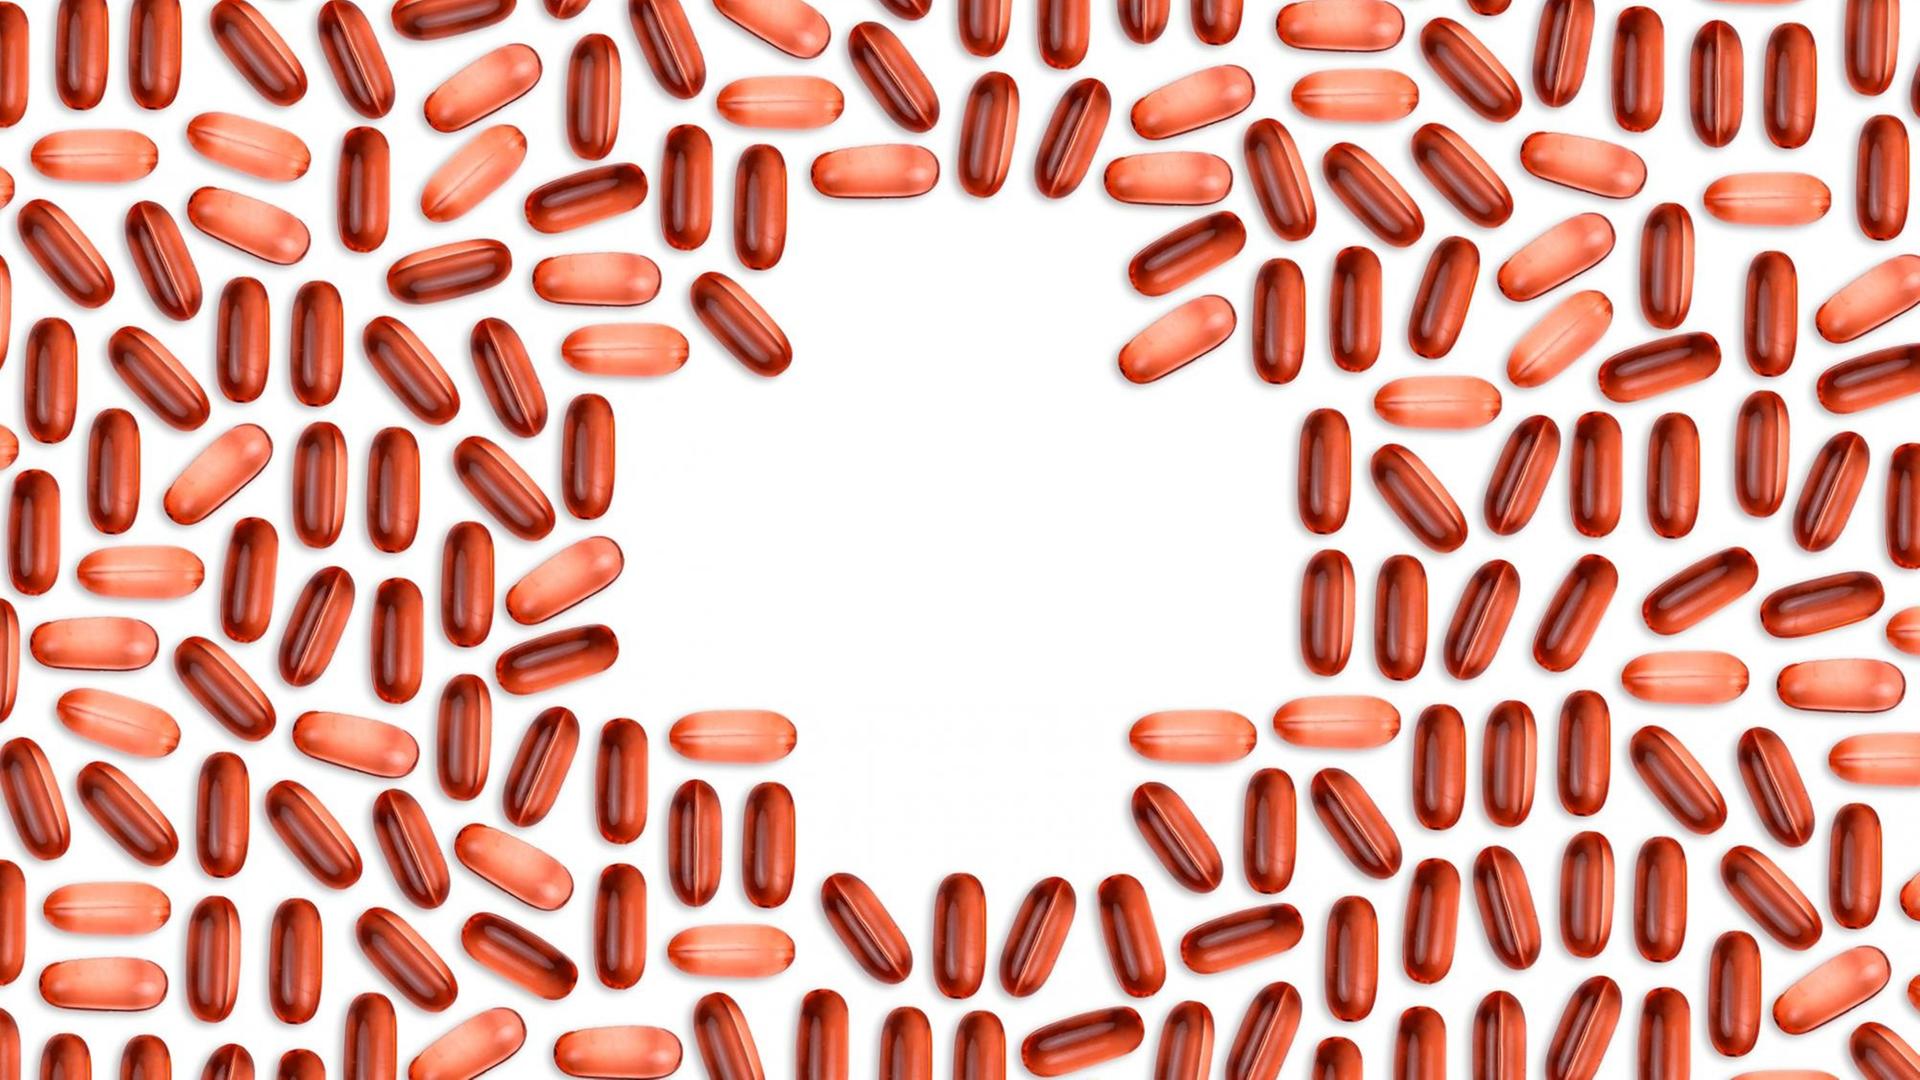 Rötliche Pillen bilden in der Mitte des Bildes ein Apothekenkreuz.